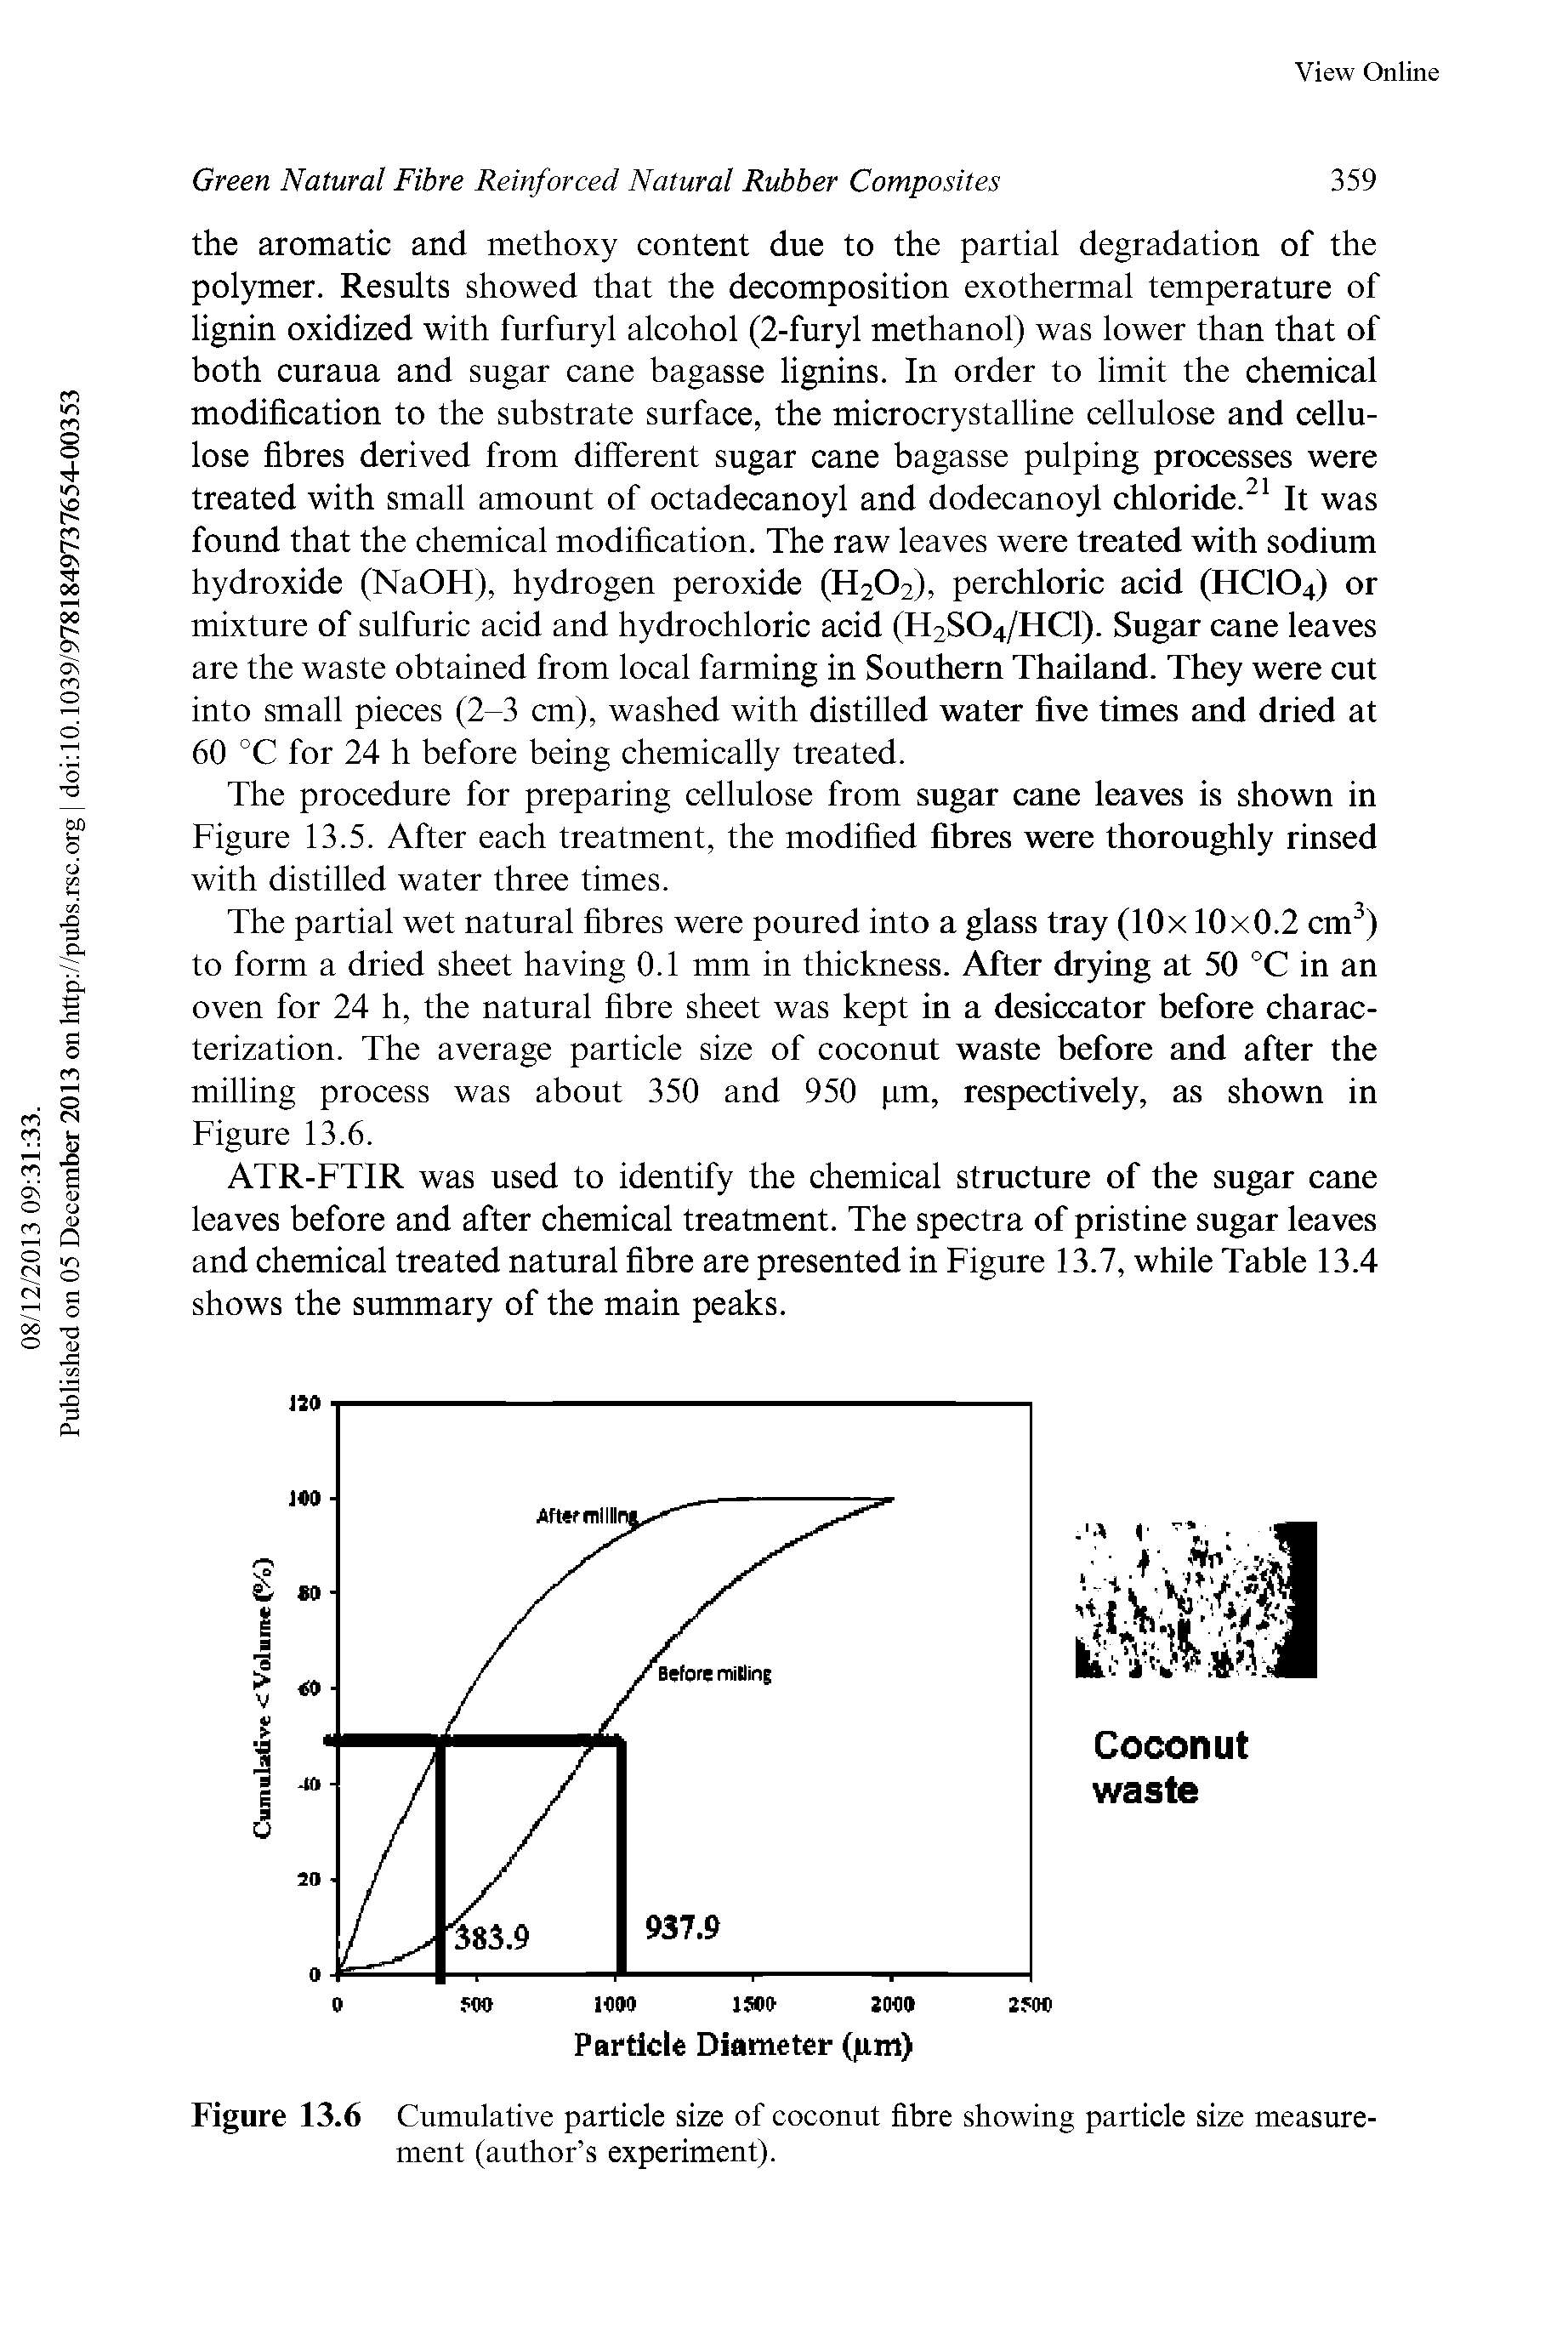 Figure 13.6 Cumulative particle size of coconut fibre showing particle size measurement (author s experiment).